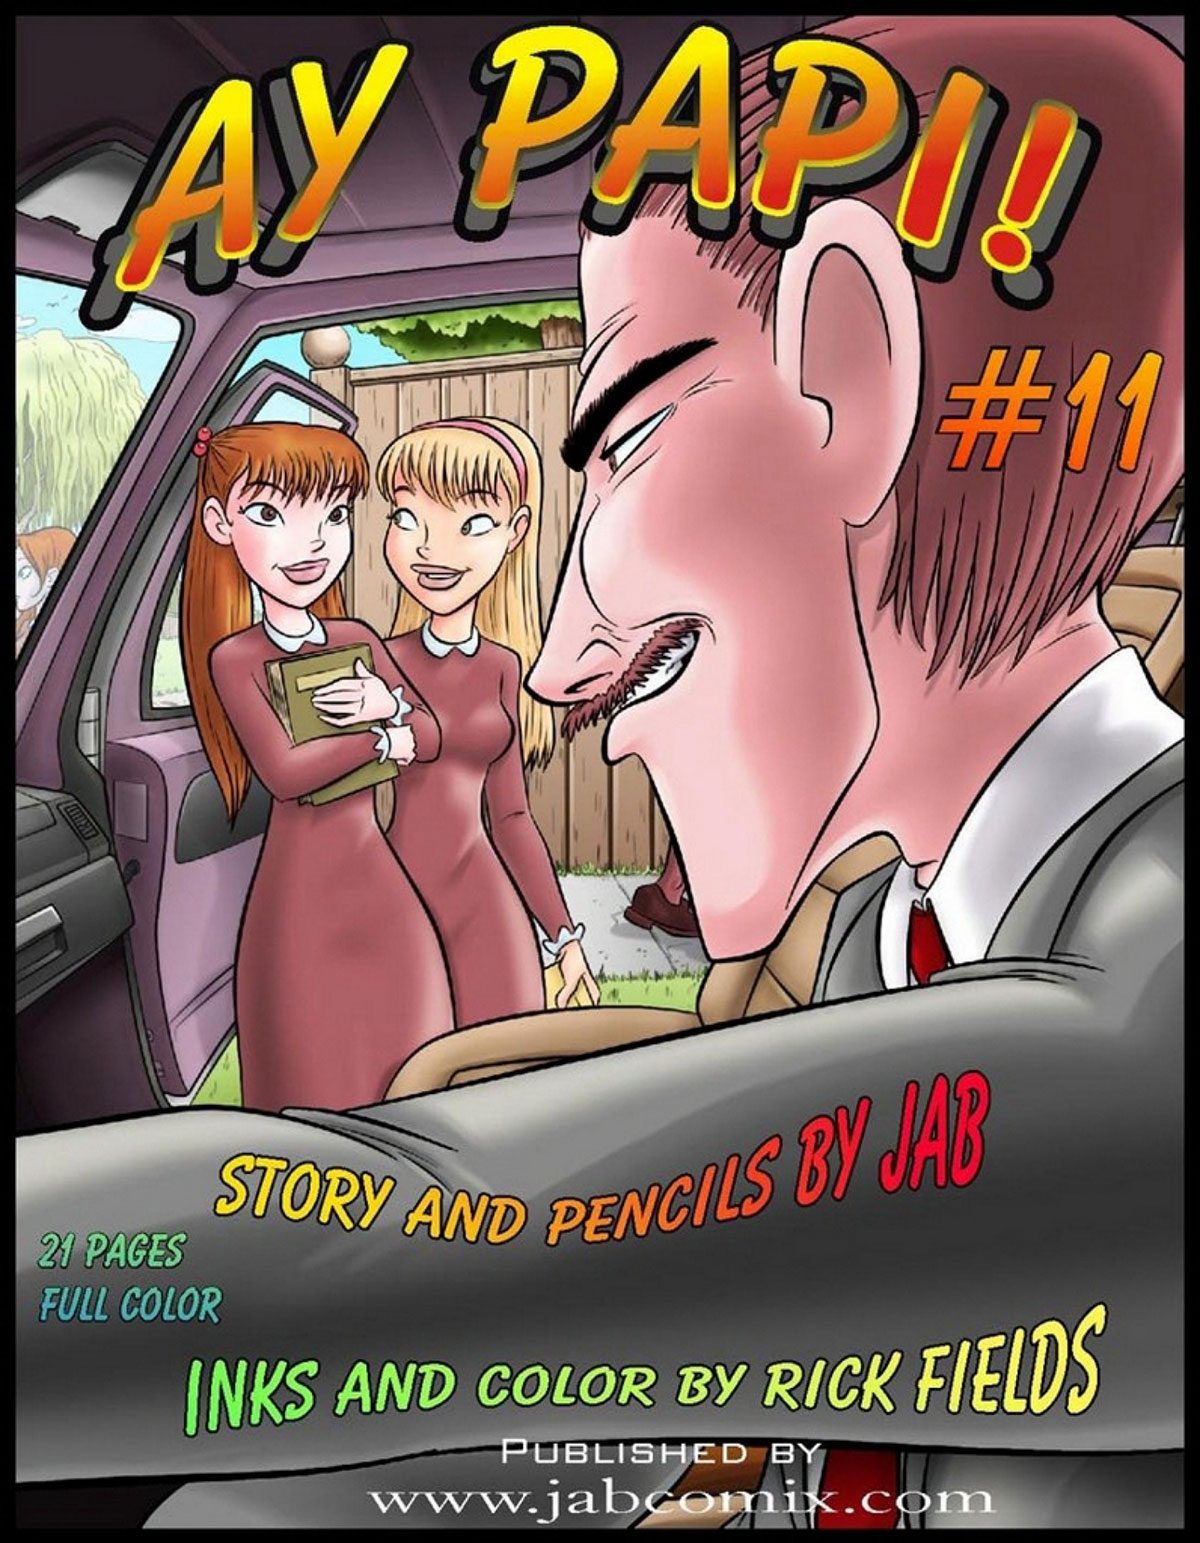 Jab comic "Ay Papi 11"